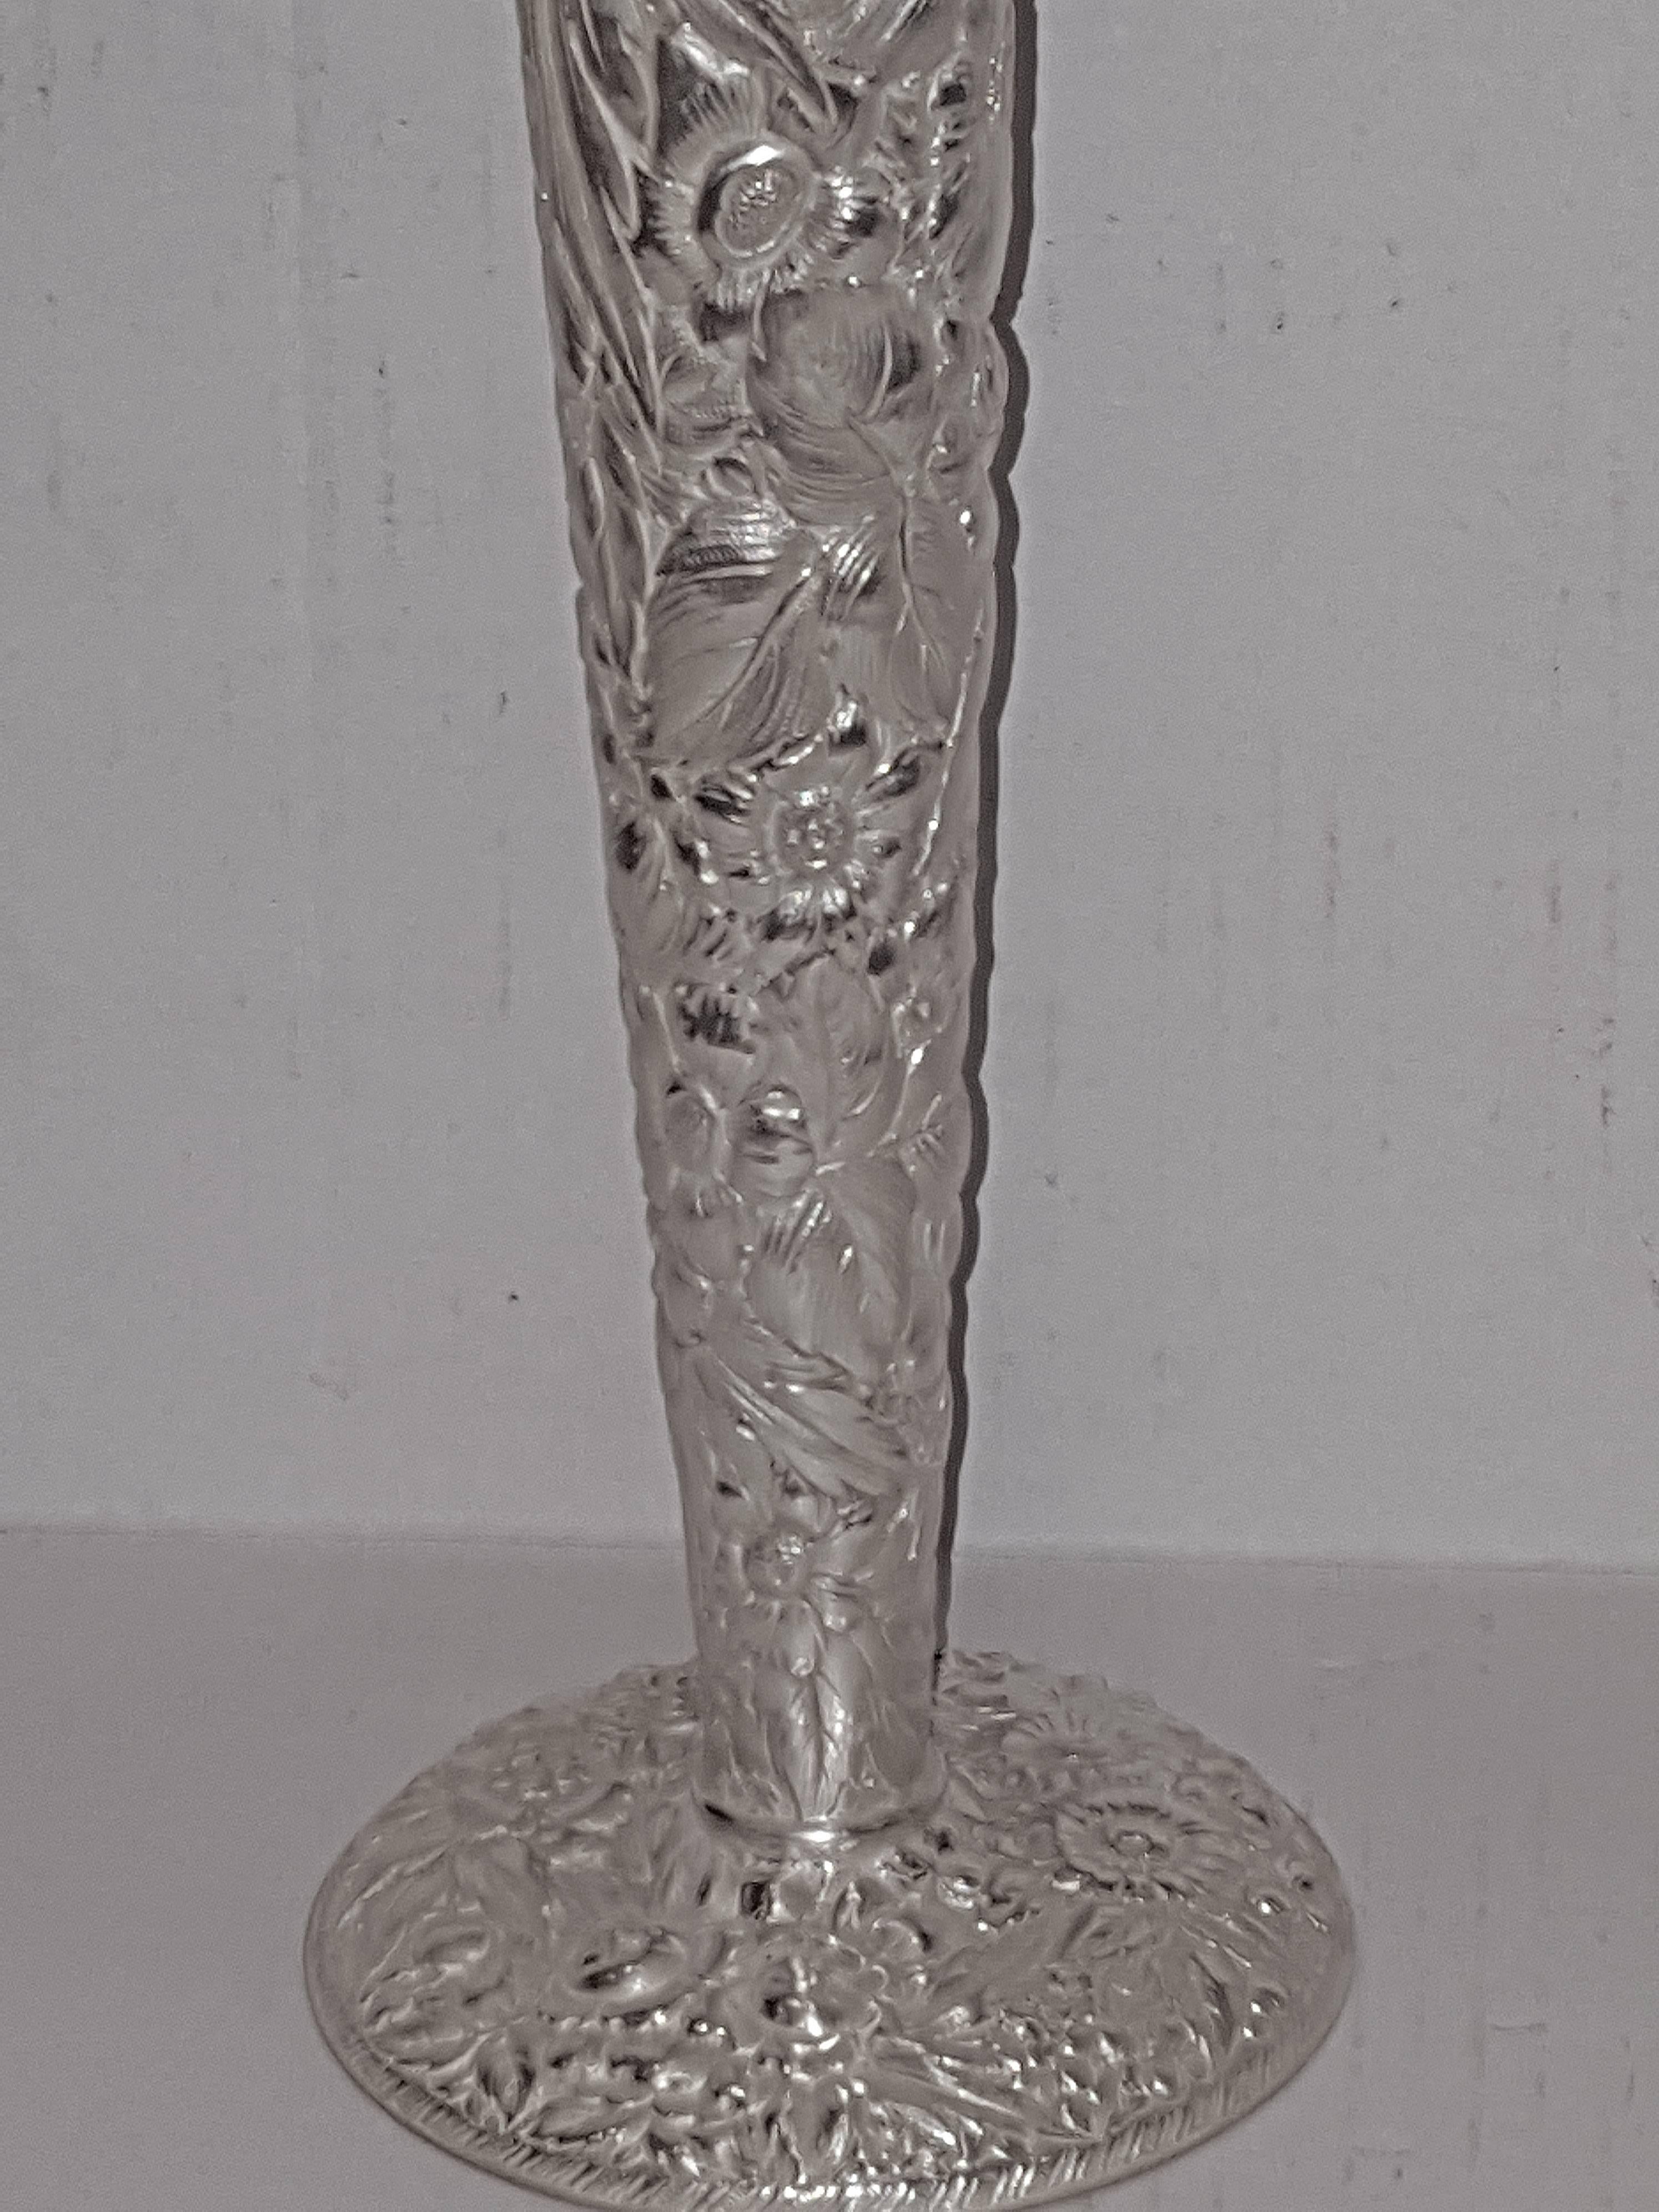 Paar versilberte Vasen aus der Zeit um 1900 mit sehr detailliertem Blumendekor.

Abmessungen:
18